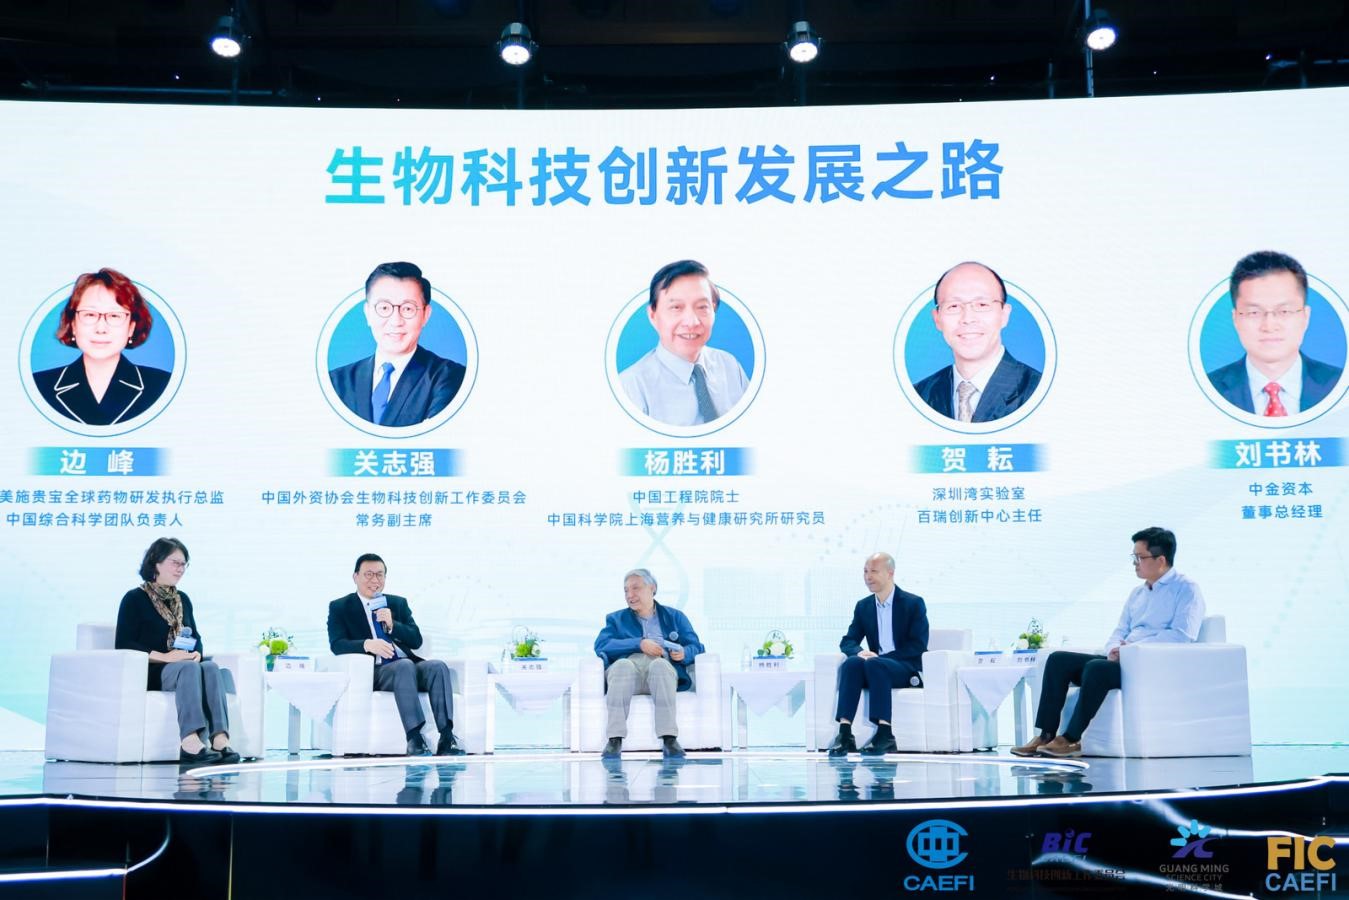 首届“国际生物科技创新与投资大会”在深圳光明开幕